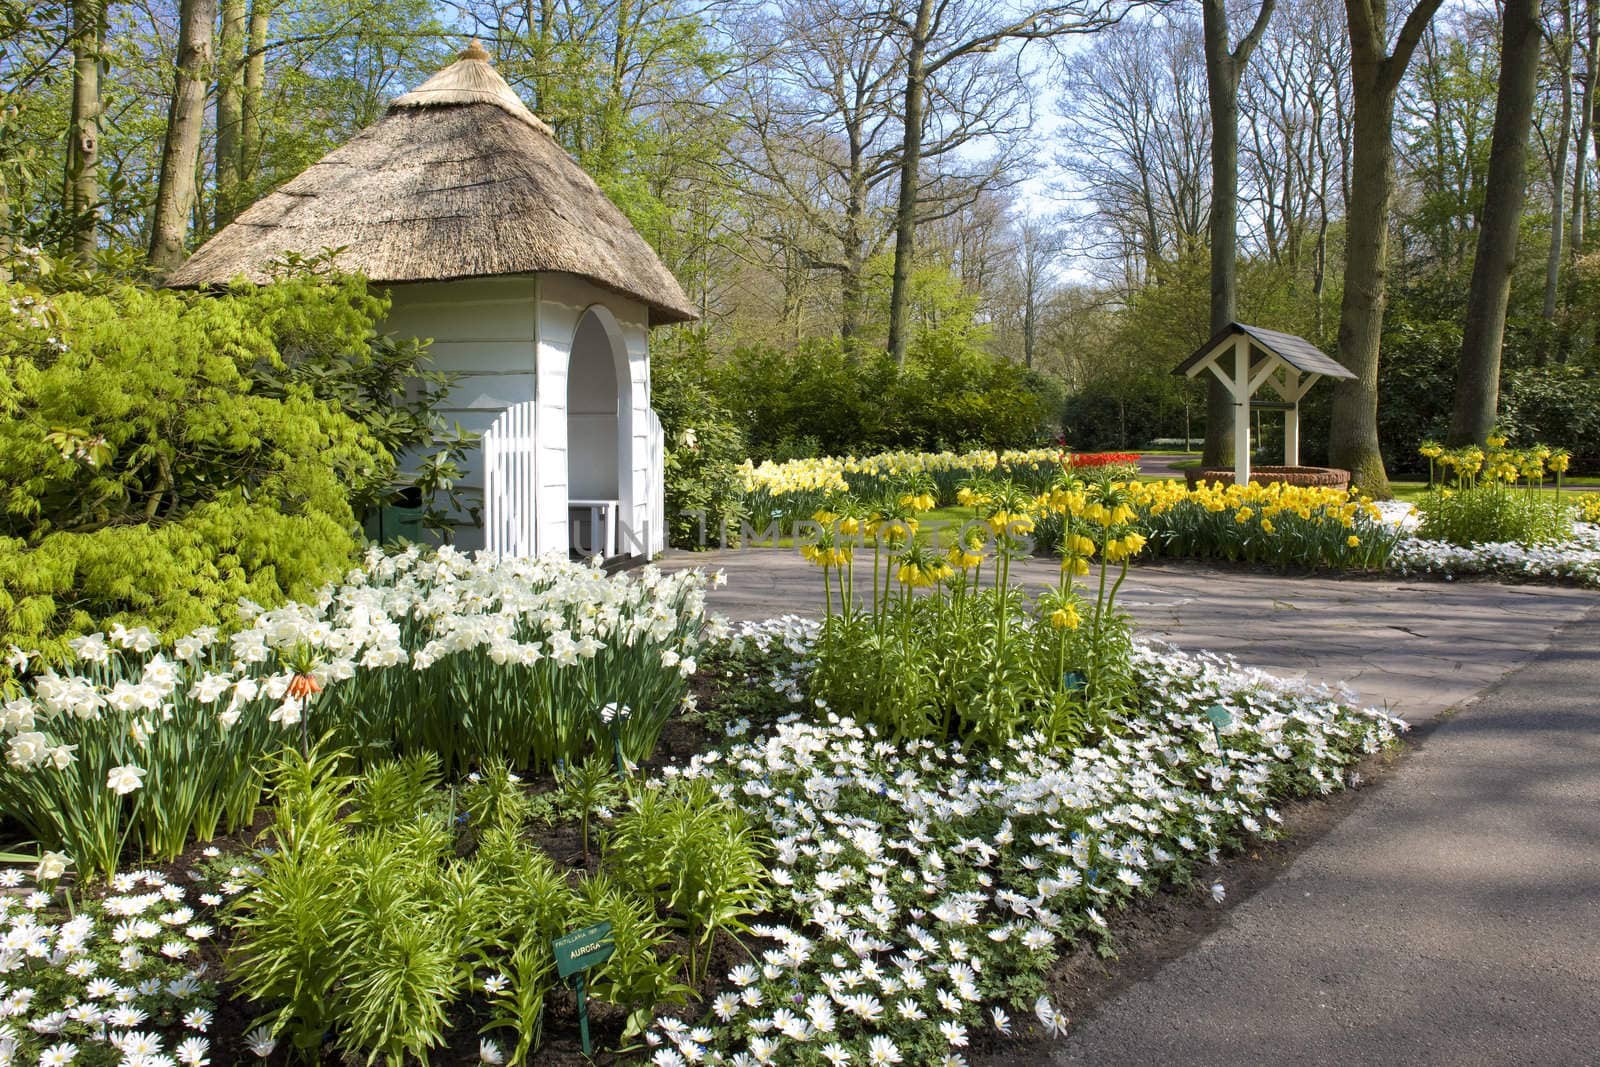 Keukenhof Gardens, Lisse, Netherlands